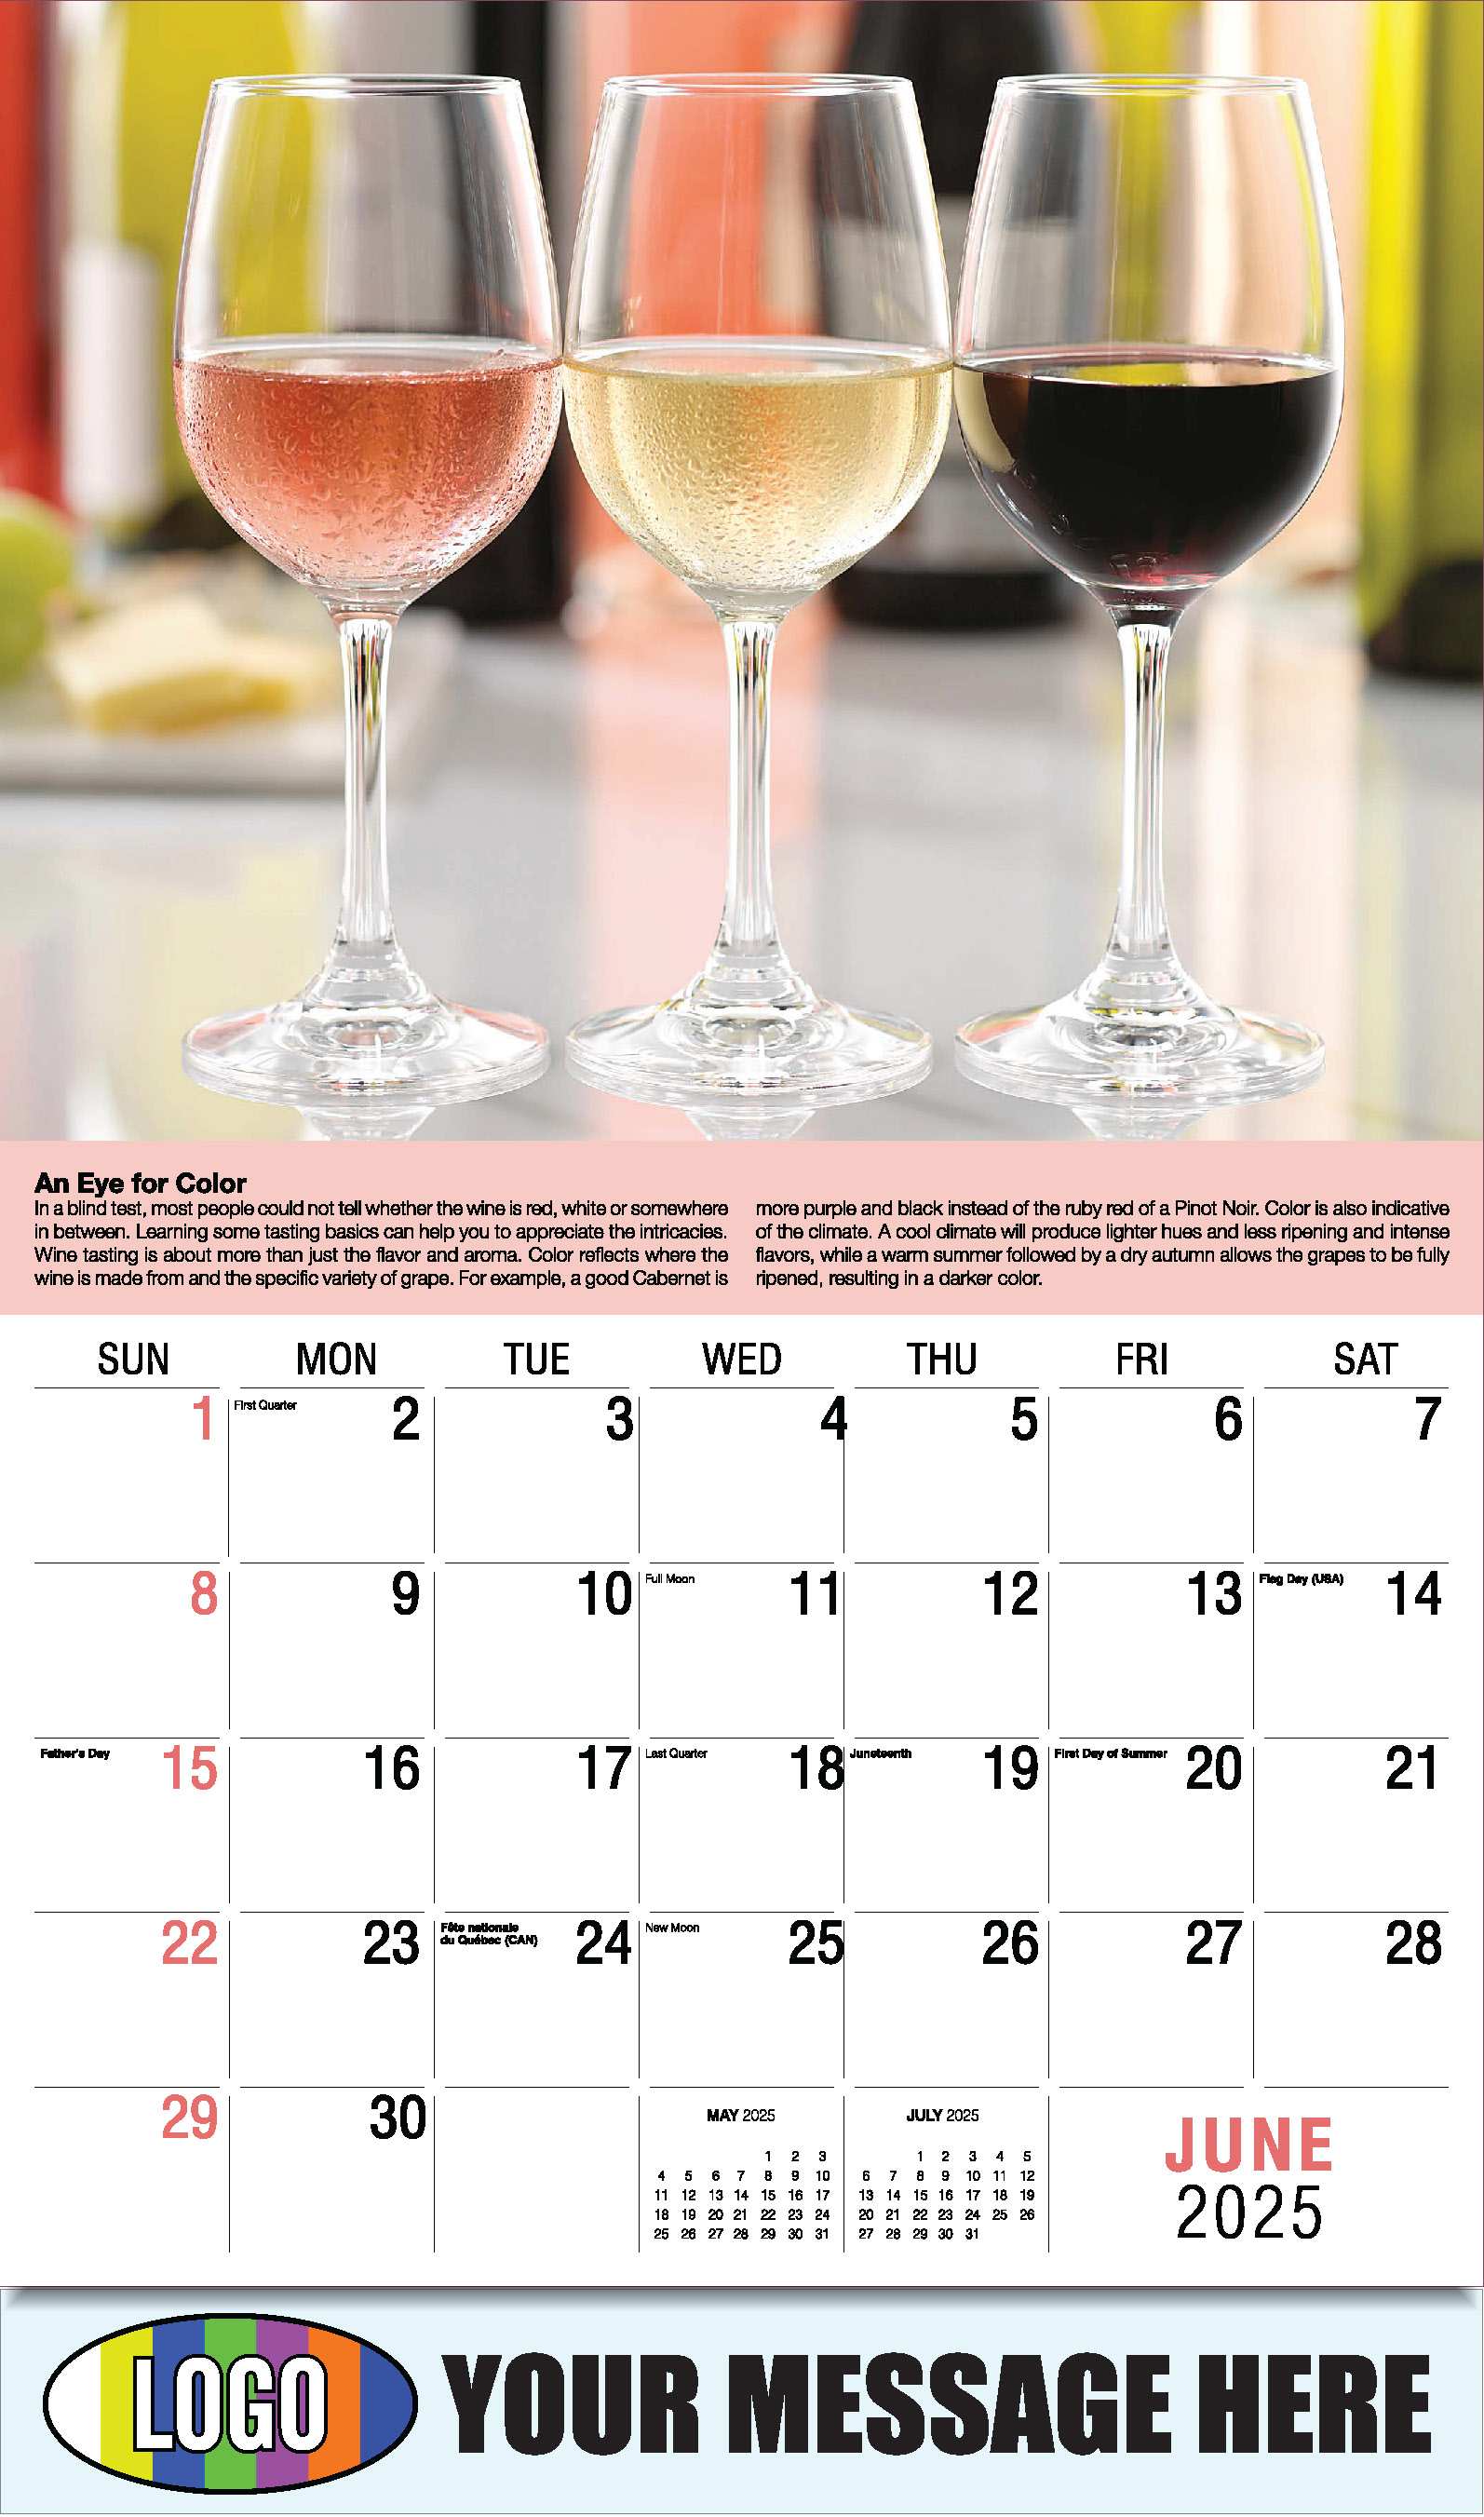 Vintages - Wine Tips 2025 Business Promo Calendar - June